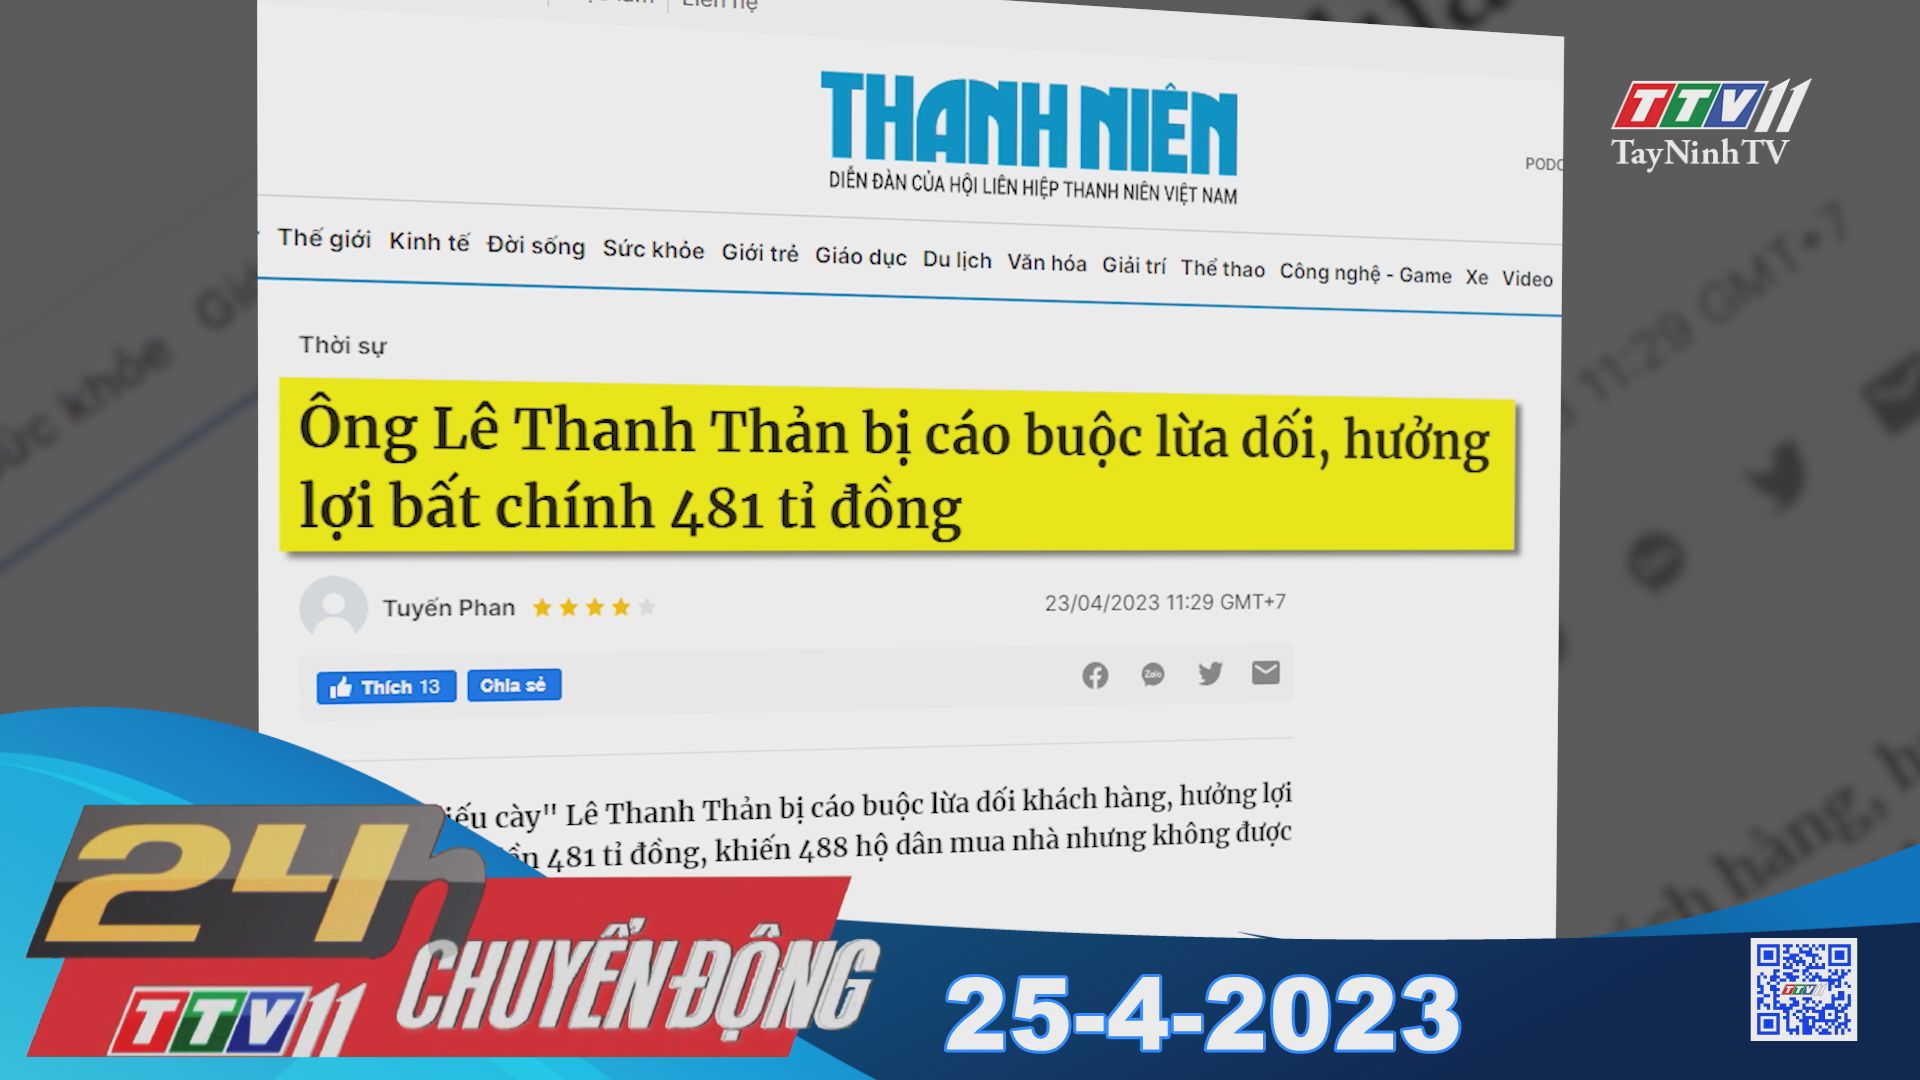 24H Chuyển động 25-4-2023 | Tin tức hôm nay | TayNinhTV